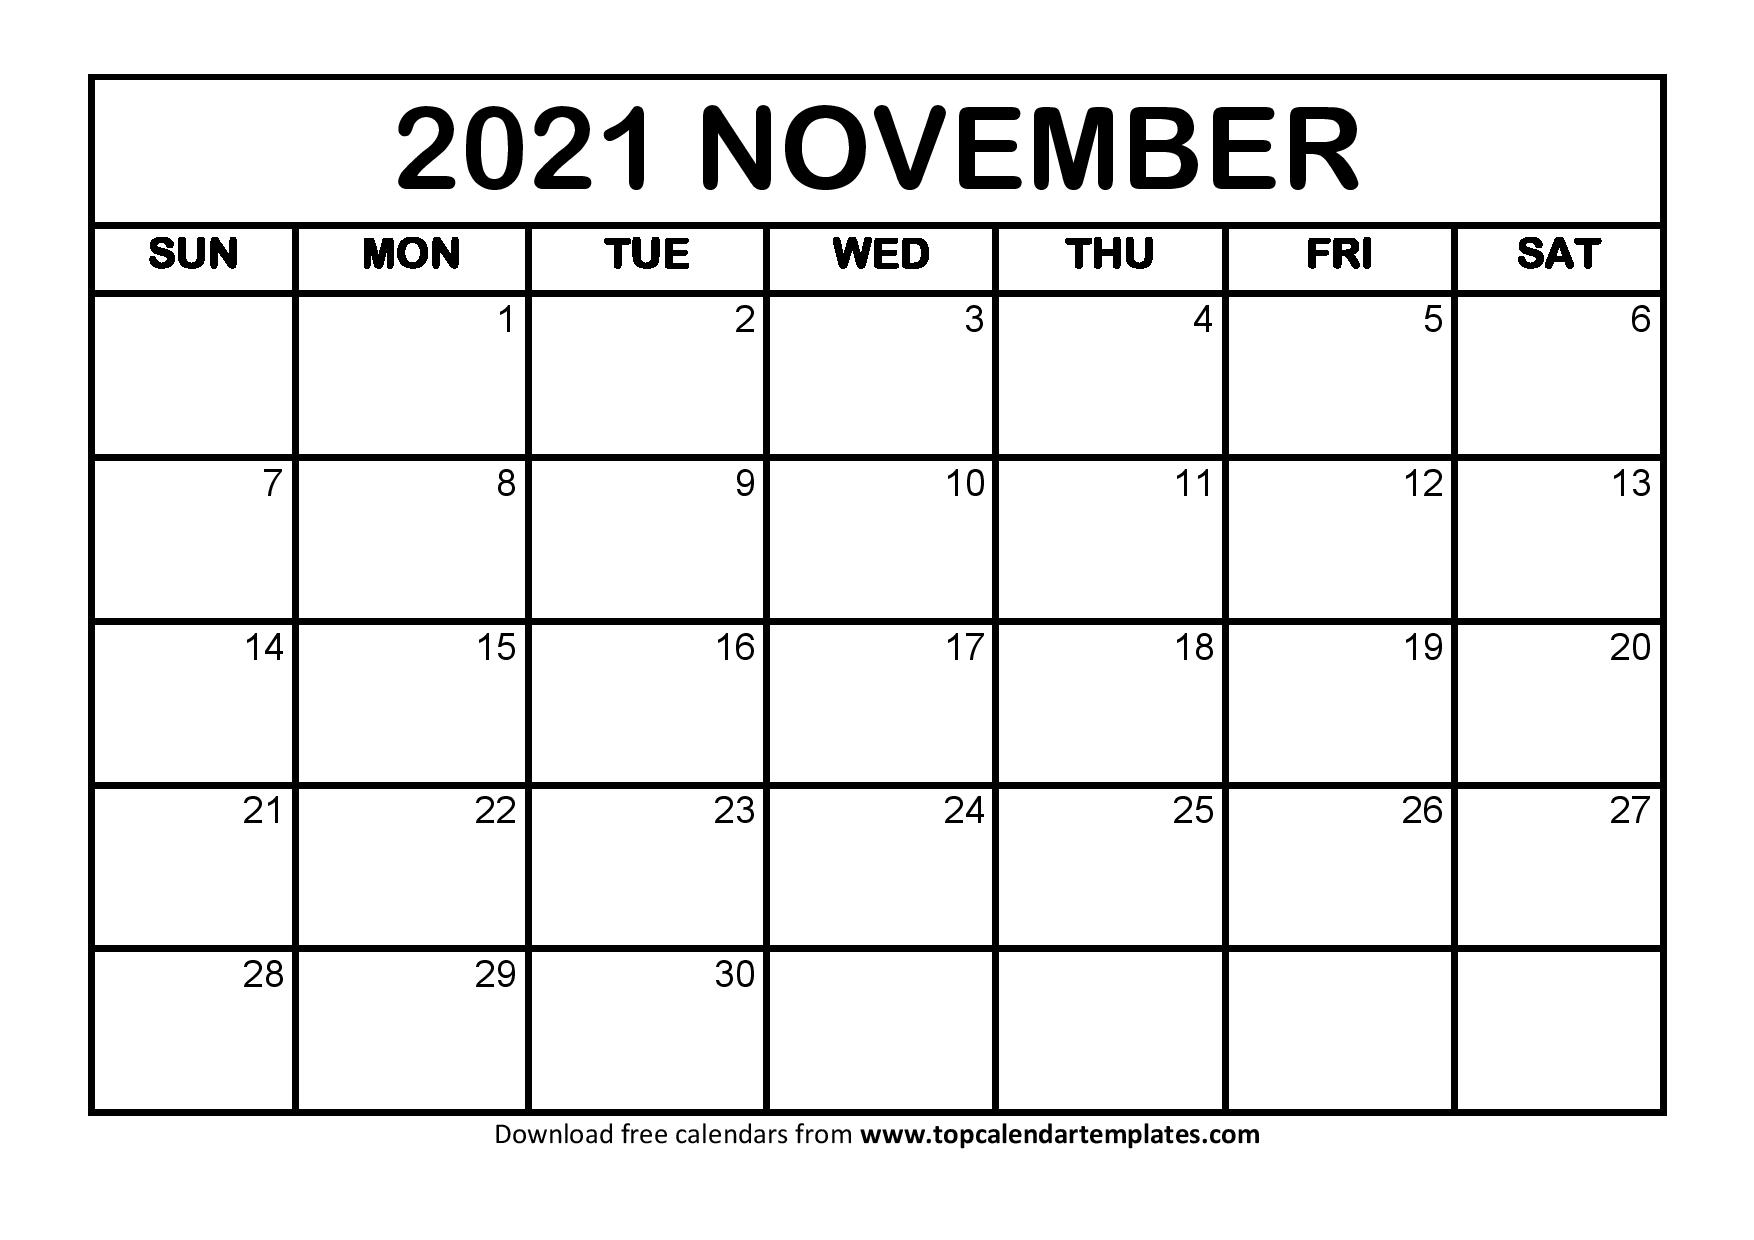 November 2021 Printable Calendar In Pdf Format